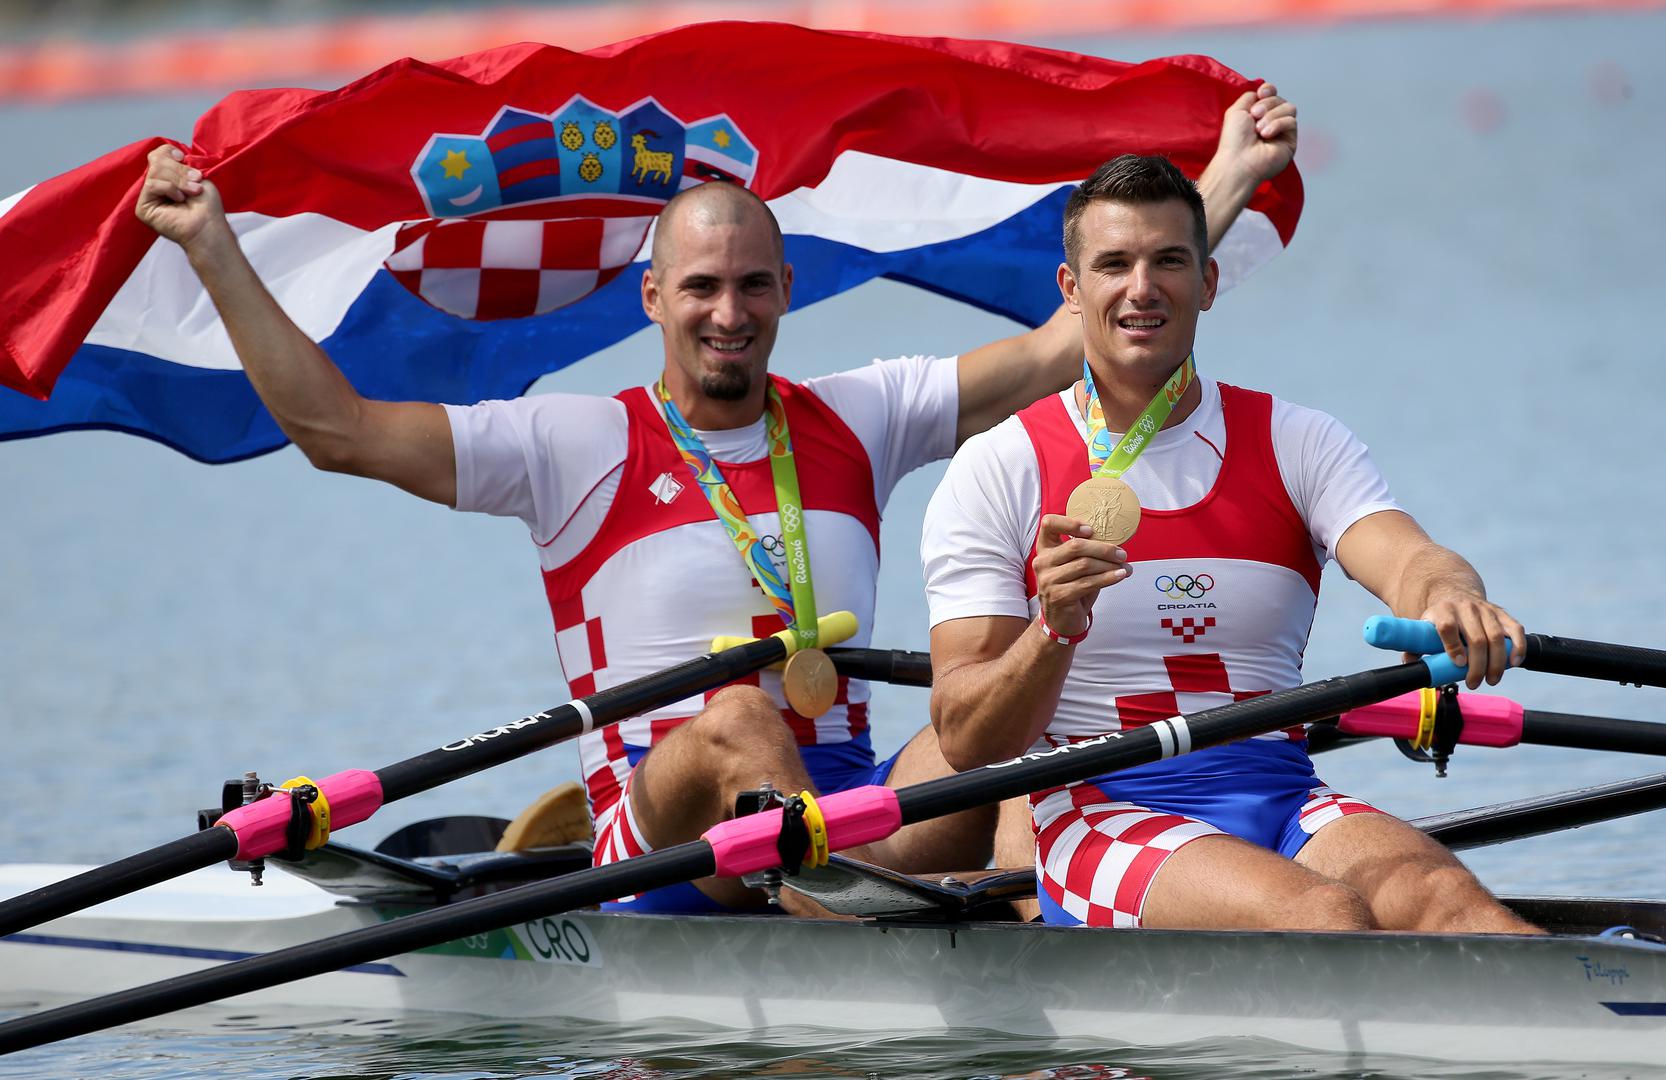 1. Braća Sinković,  dvostruki svjetski prvaci i europski prvaci, veslači Martin i Valent Sinković osvajači zlatne medalje u dvojcu na pariće na Olimpijskim igrama u Rio de Janeiru.